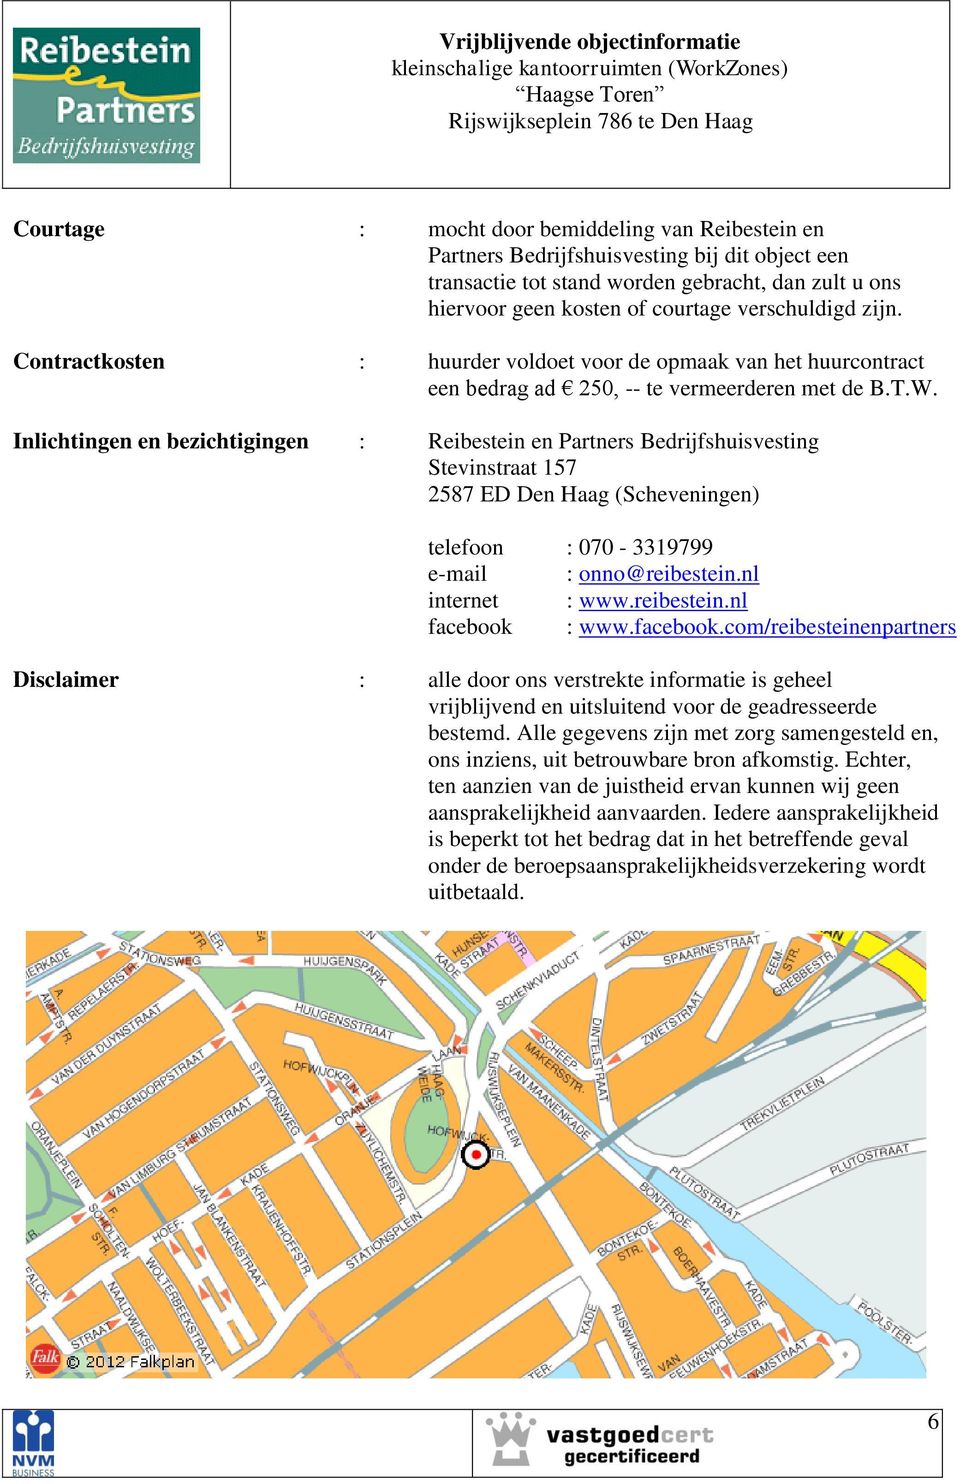 Inlichtingen en bezichtigingen : Reibestein en Partners Bedrijfshuisvesting Stevinstraat 157 2587 ED Den Haag (Scheveningen) telefoon : 070-3319799 e-mail : onno@reibestein.nl internet : www.